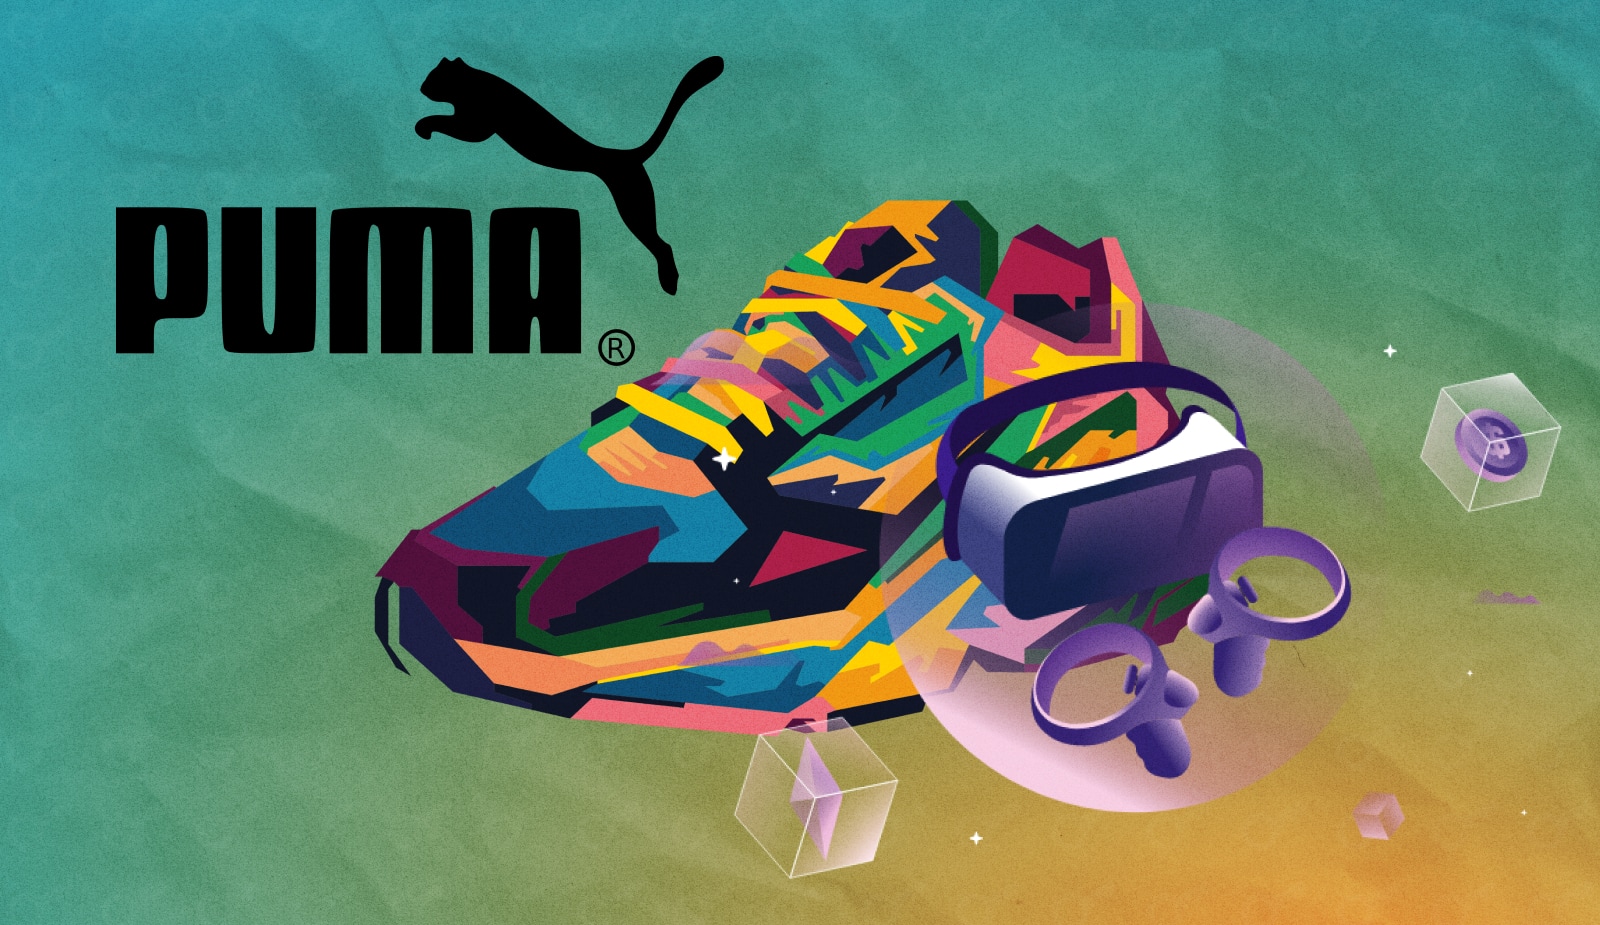 Puma представила метавселенную и лимитированные NFT-кроссовки для Недели Моды. Заглавный коллаж новости.